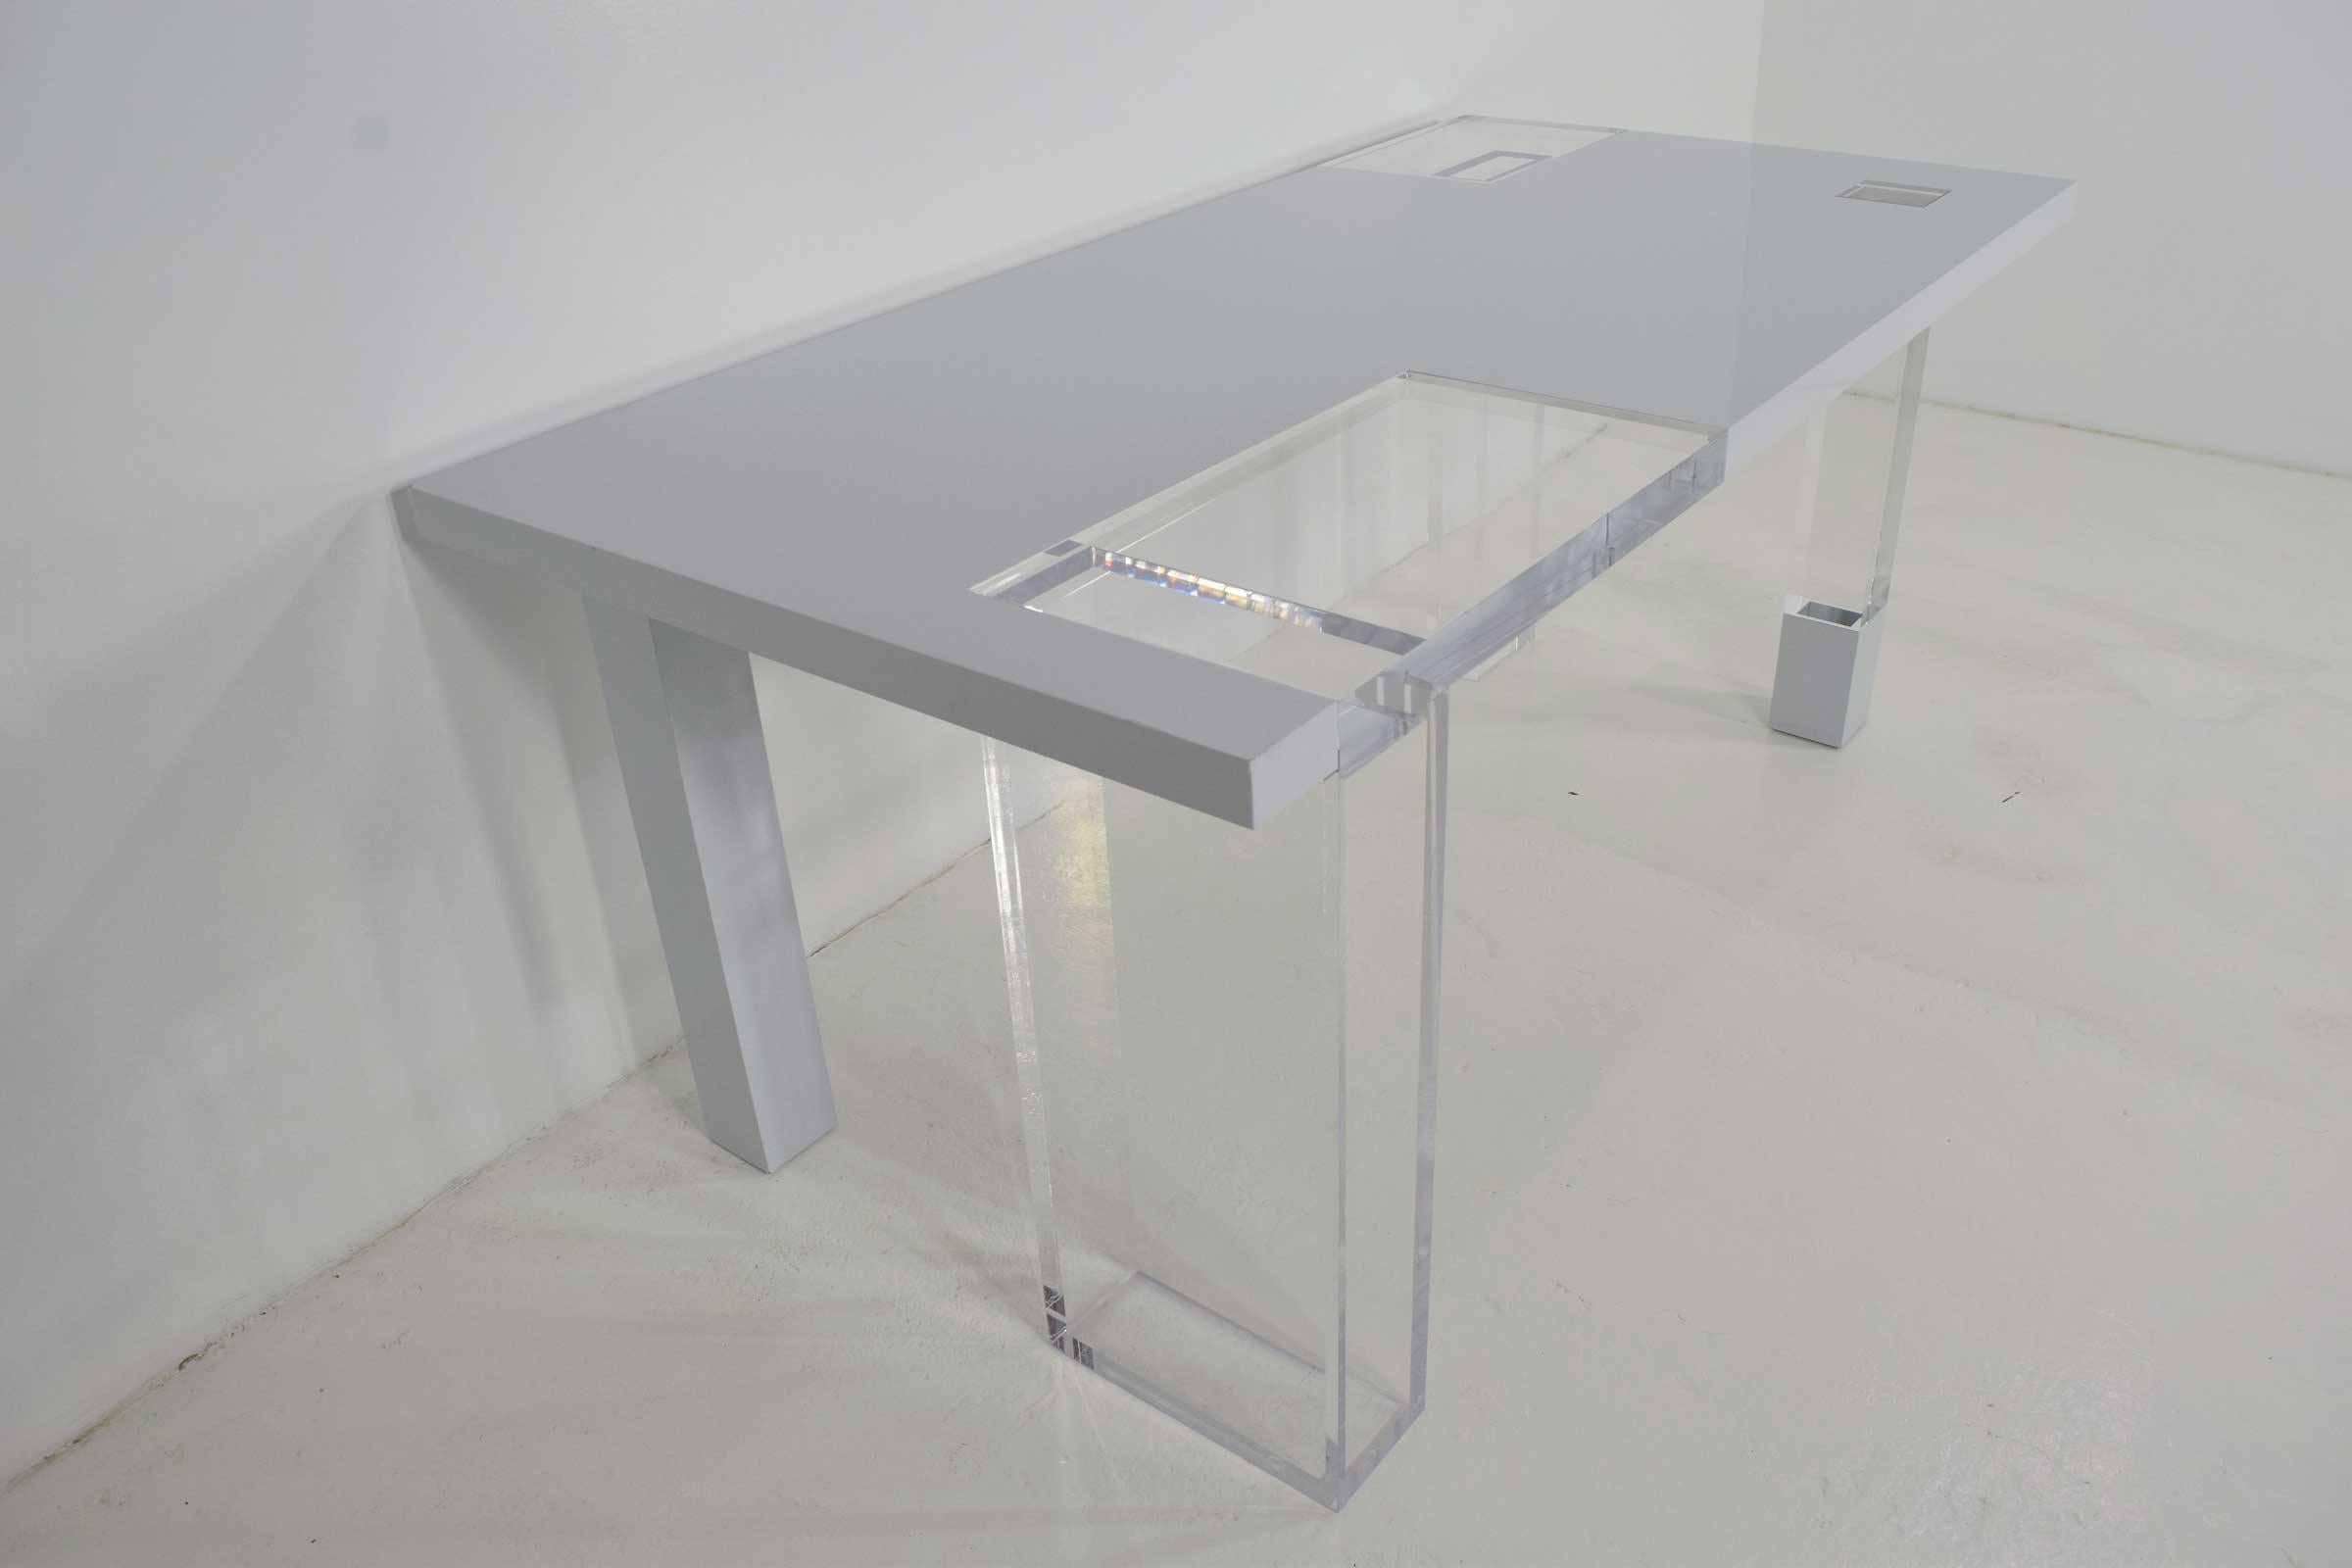 Ein schöner Tisch aus Lucite und weißem Lack. Ideal für einen Arbeitstisch, einen Eingangstisch oder einen Ausstellungstisch. Kann auch als Schreibtisch oder Esstisch verwendet werden, aber überprüfen Sie die Höhe. Dieser Tisch war wahrscheinlich